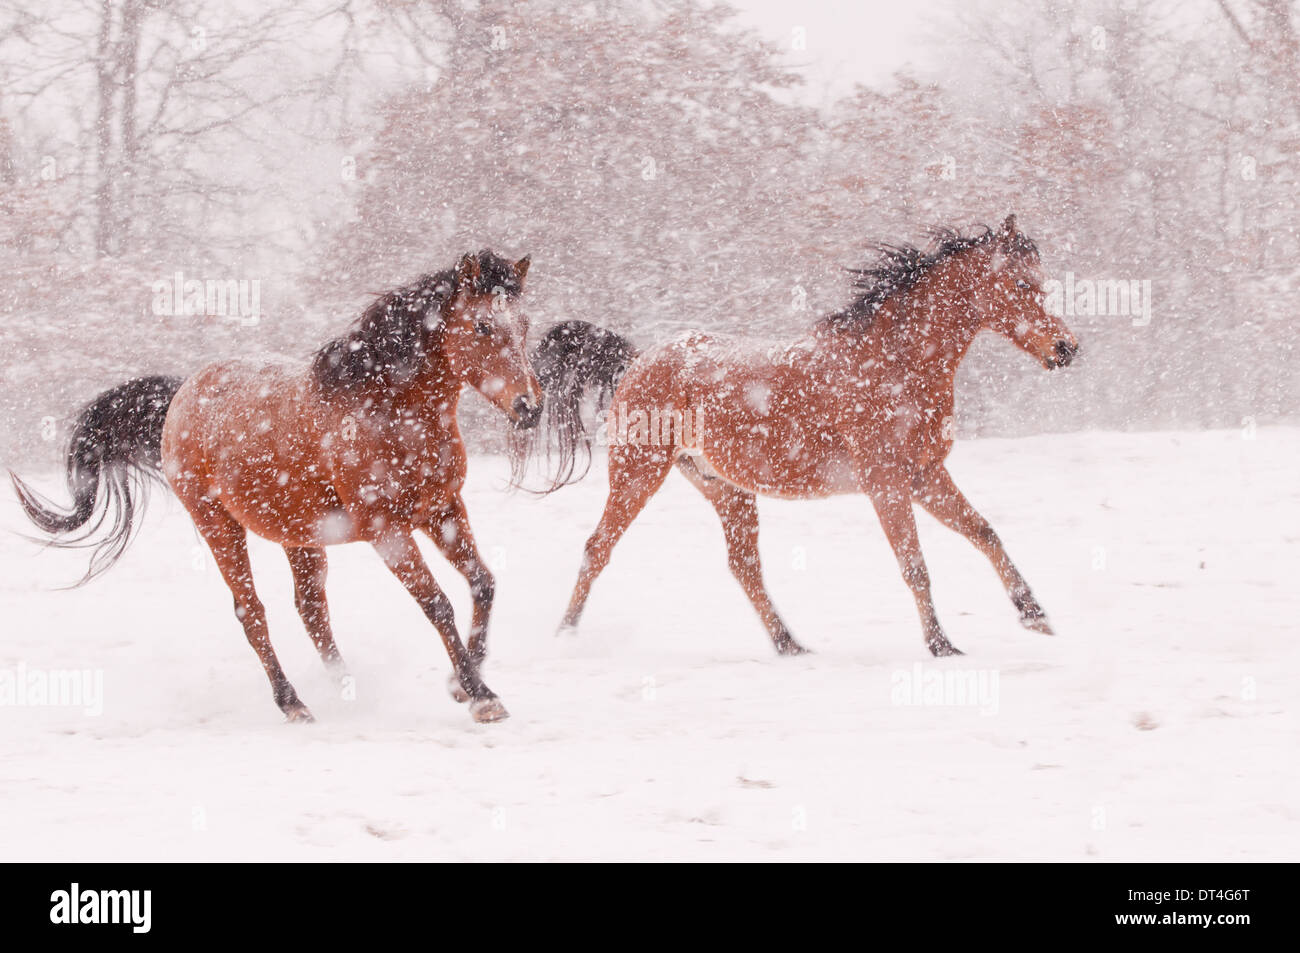 Deux chevaux arabes s'exécutant dans un blizzard Banque D'Images